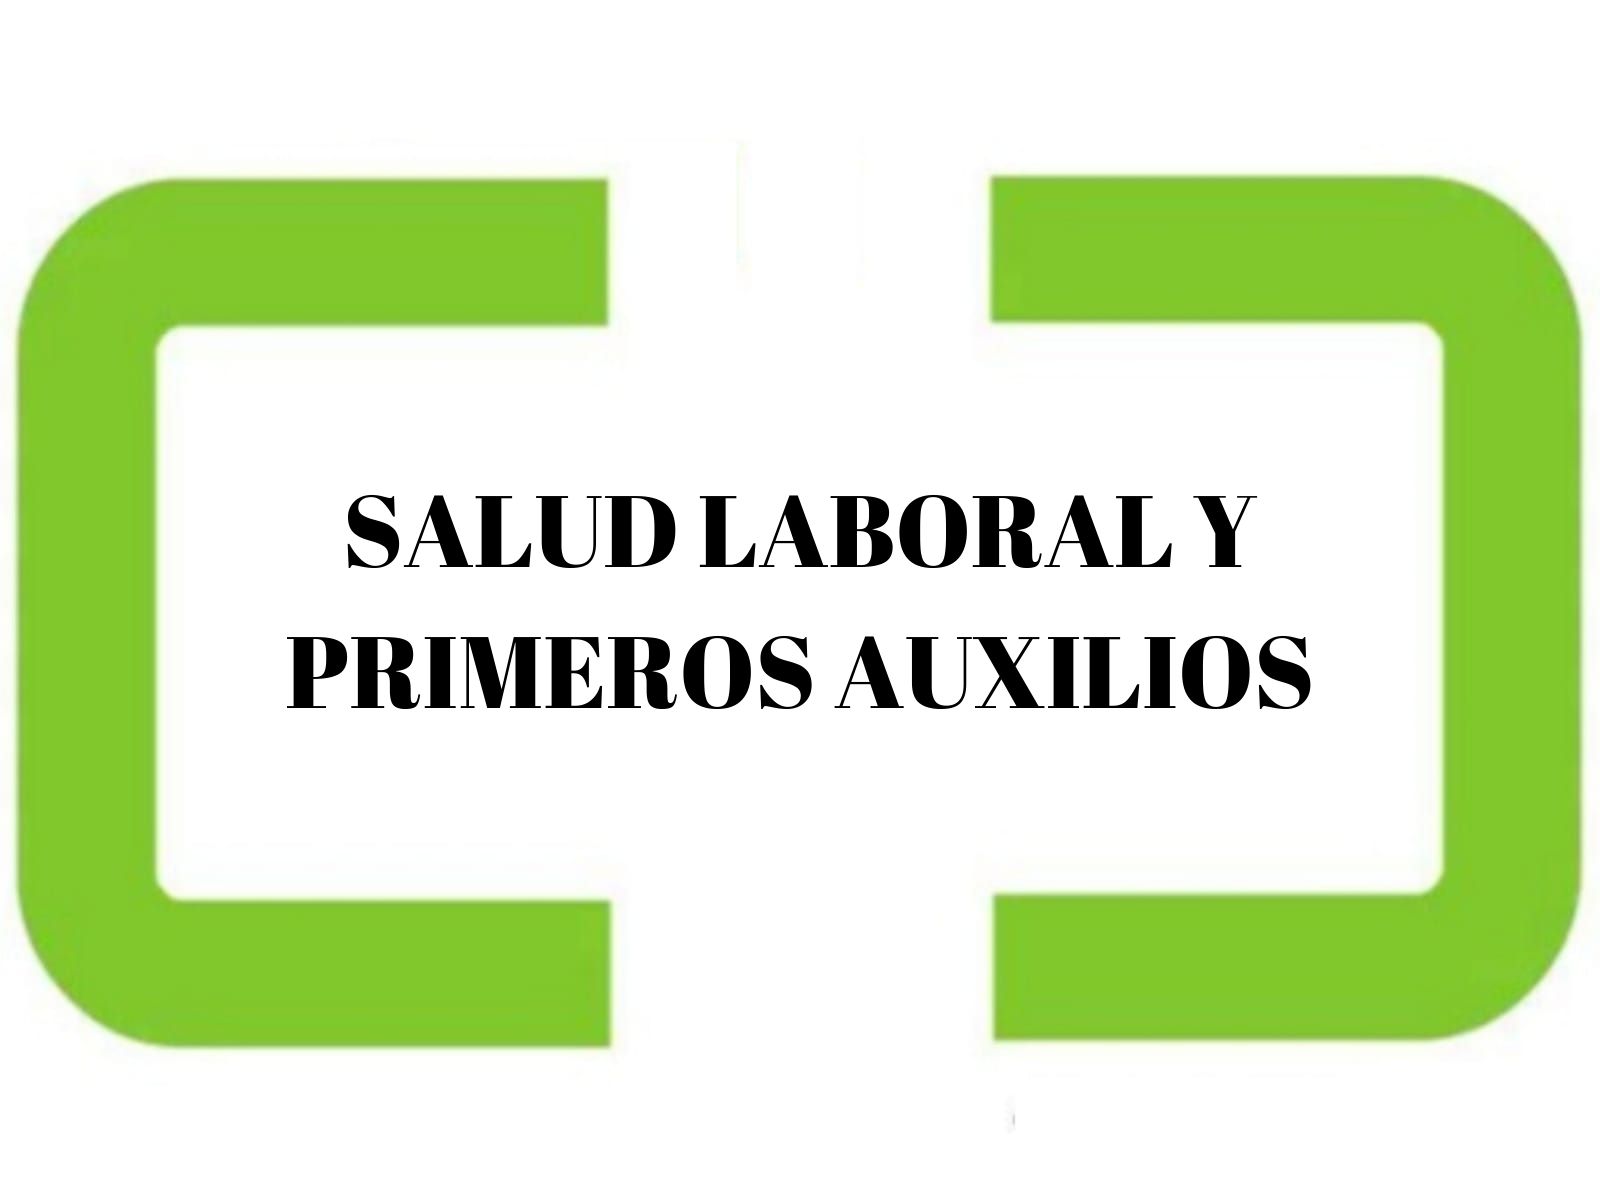 SALUD LABORAL Y PRIMEROS AUXILIOS